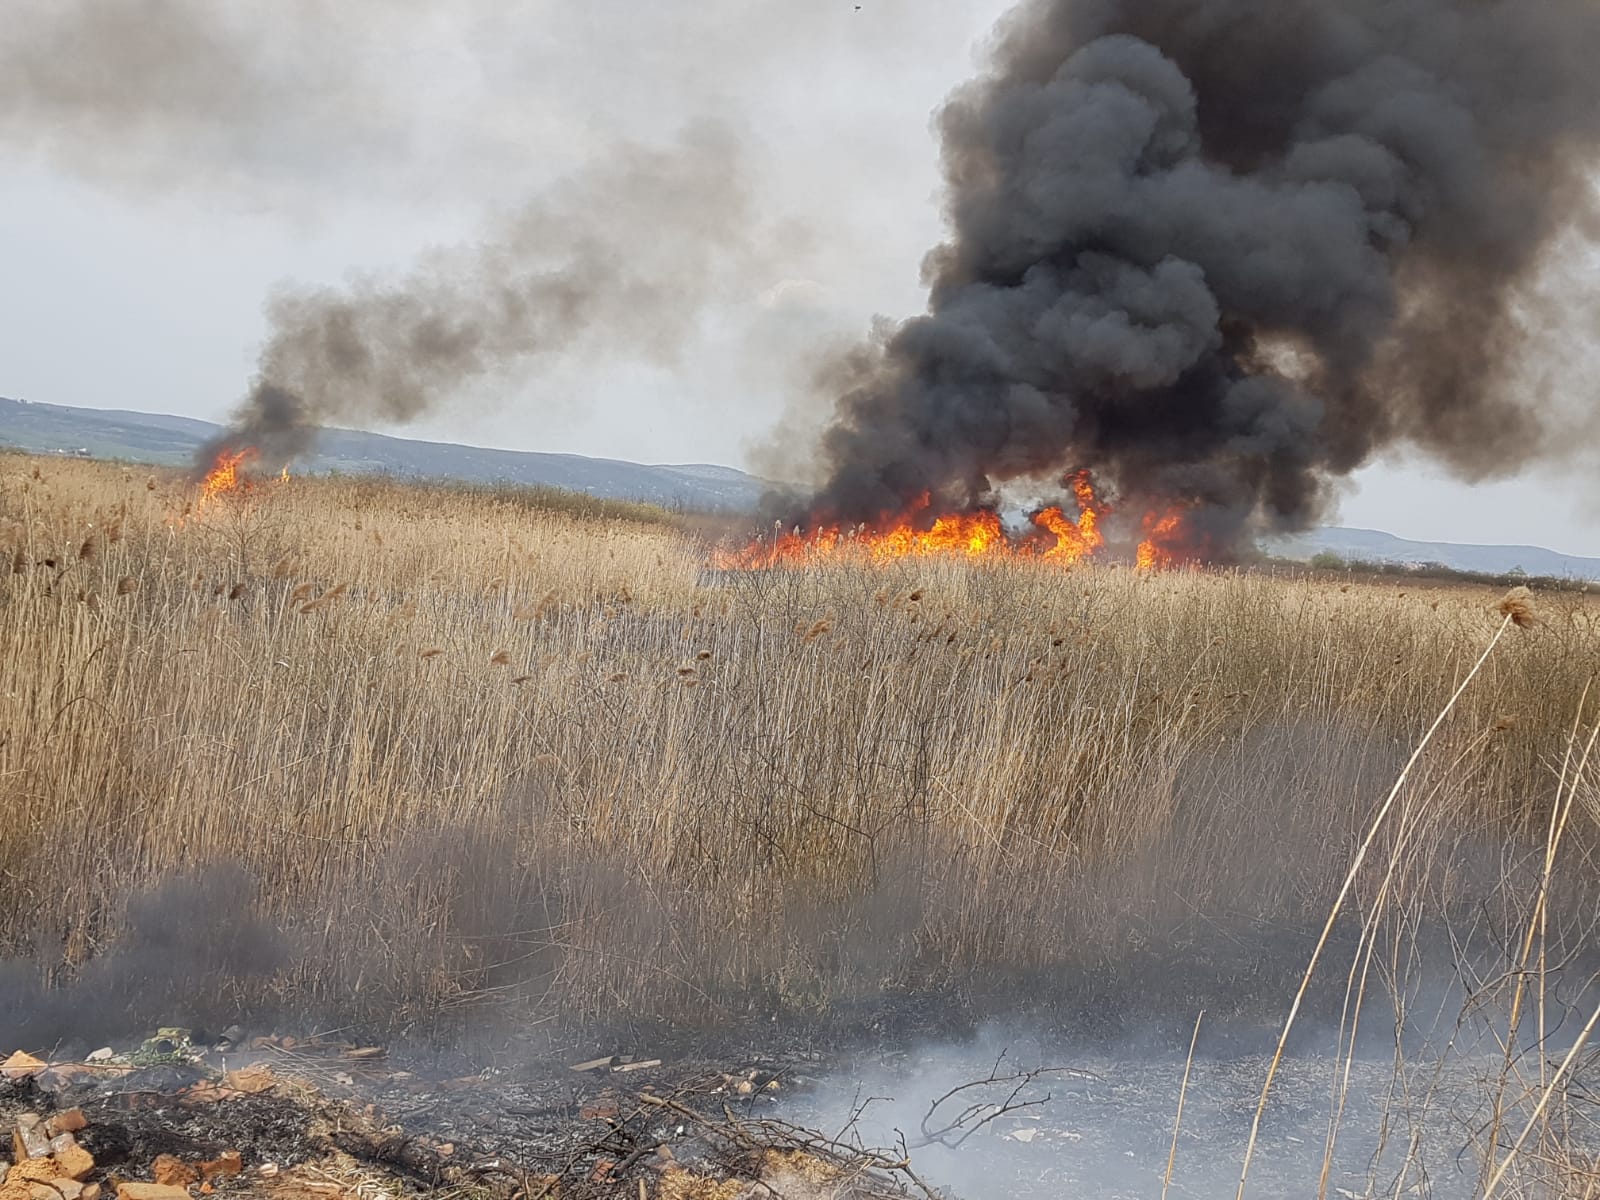 Foto | Aproximativ 2 hectare de vegetație uscată și resturi vegetale au arsîn urmă cu puțin timp